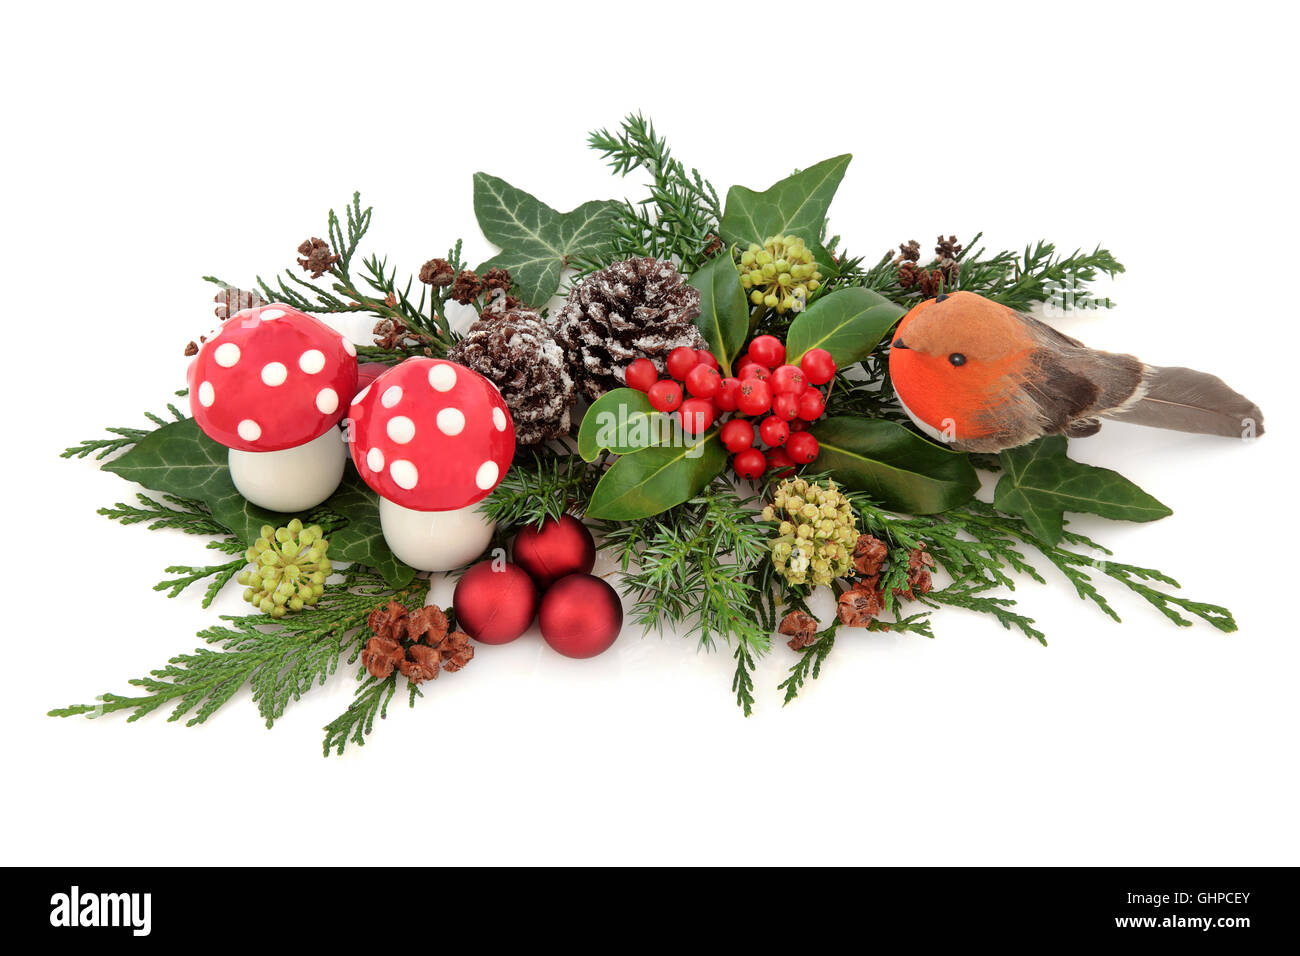 Weihnachten Deko Display mit Robin, roten Kugeln und Fliegenpilz Pilz Dekorationen mit Holly, Efeu, Schnee bedeckte Tannenzapfen Stockfoto